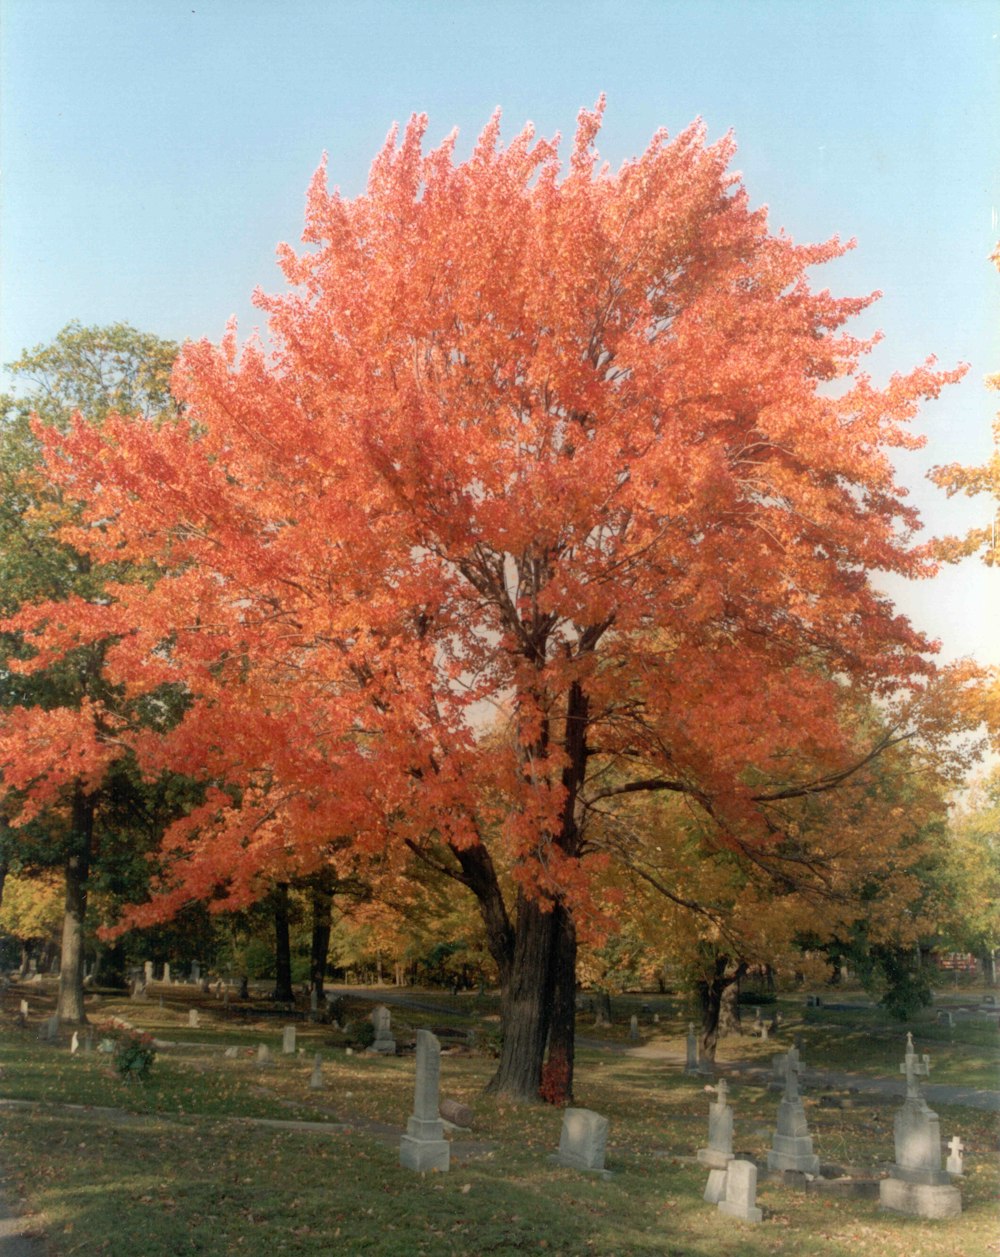 orange-leaved tree